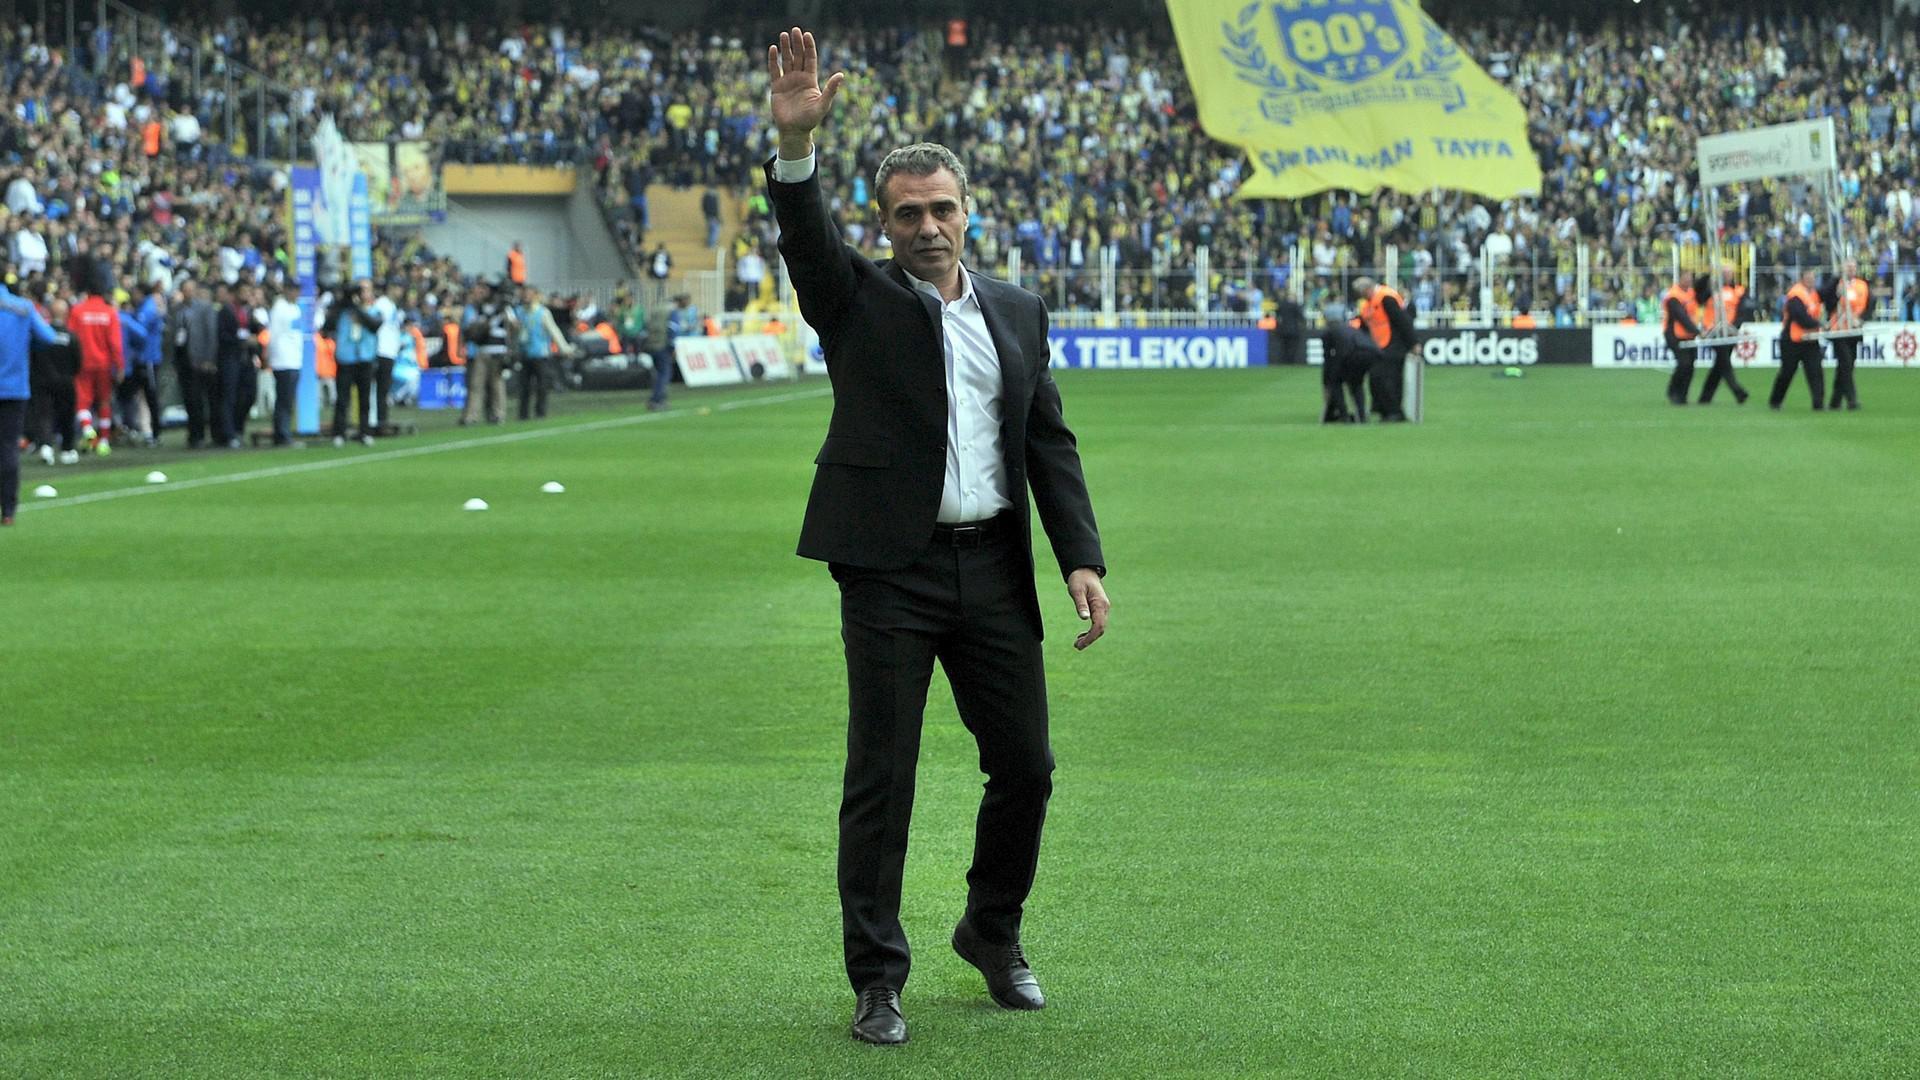 Fenerbahçenin golcüleri kasayı dolduruyor 7.7 milyon kazandırdılar...